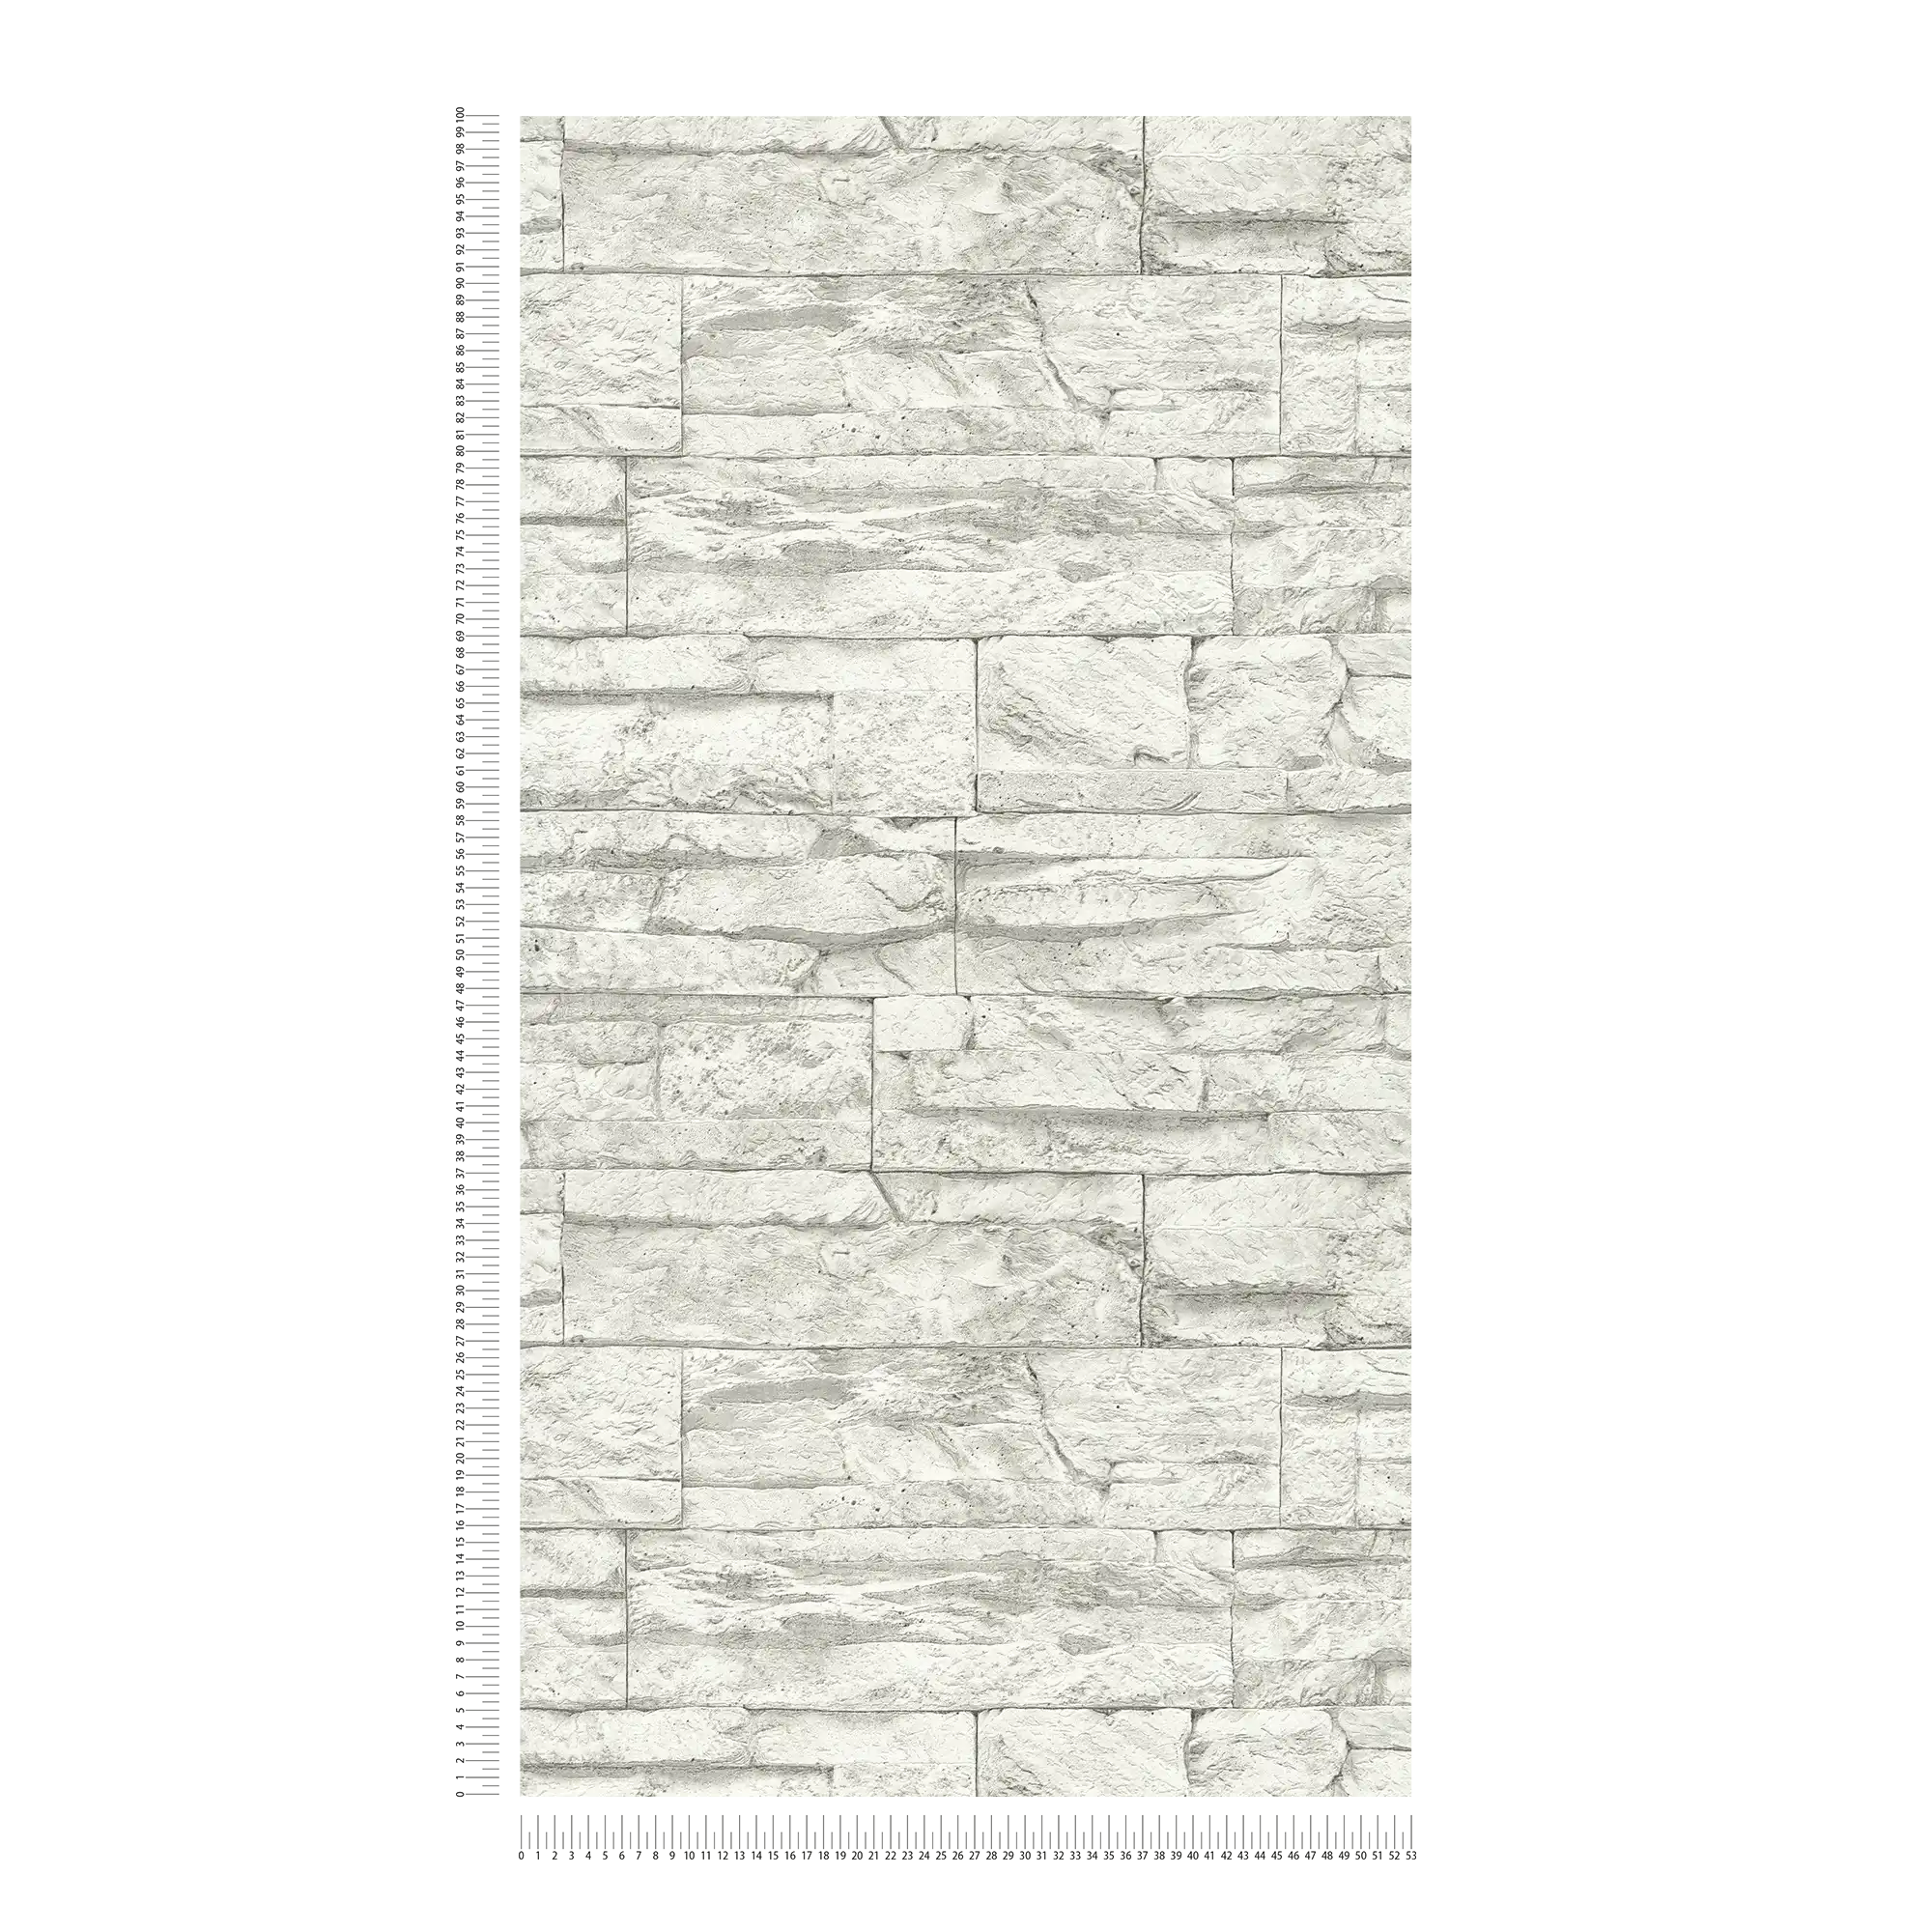             Papier peint avec maçonnerie claire en pierres naturelles - blanc, gris
        